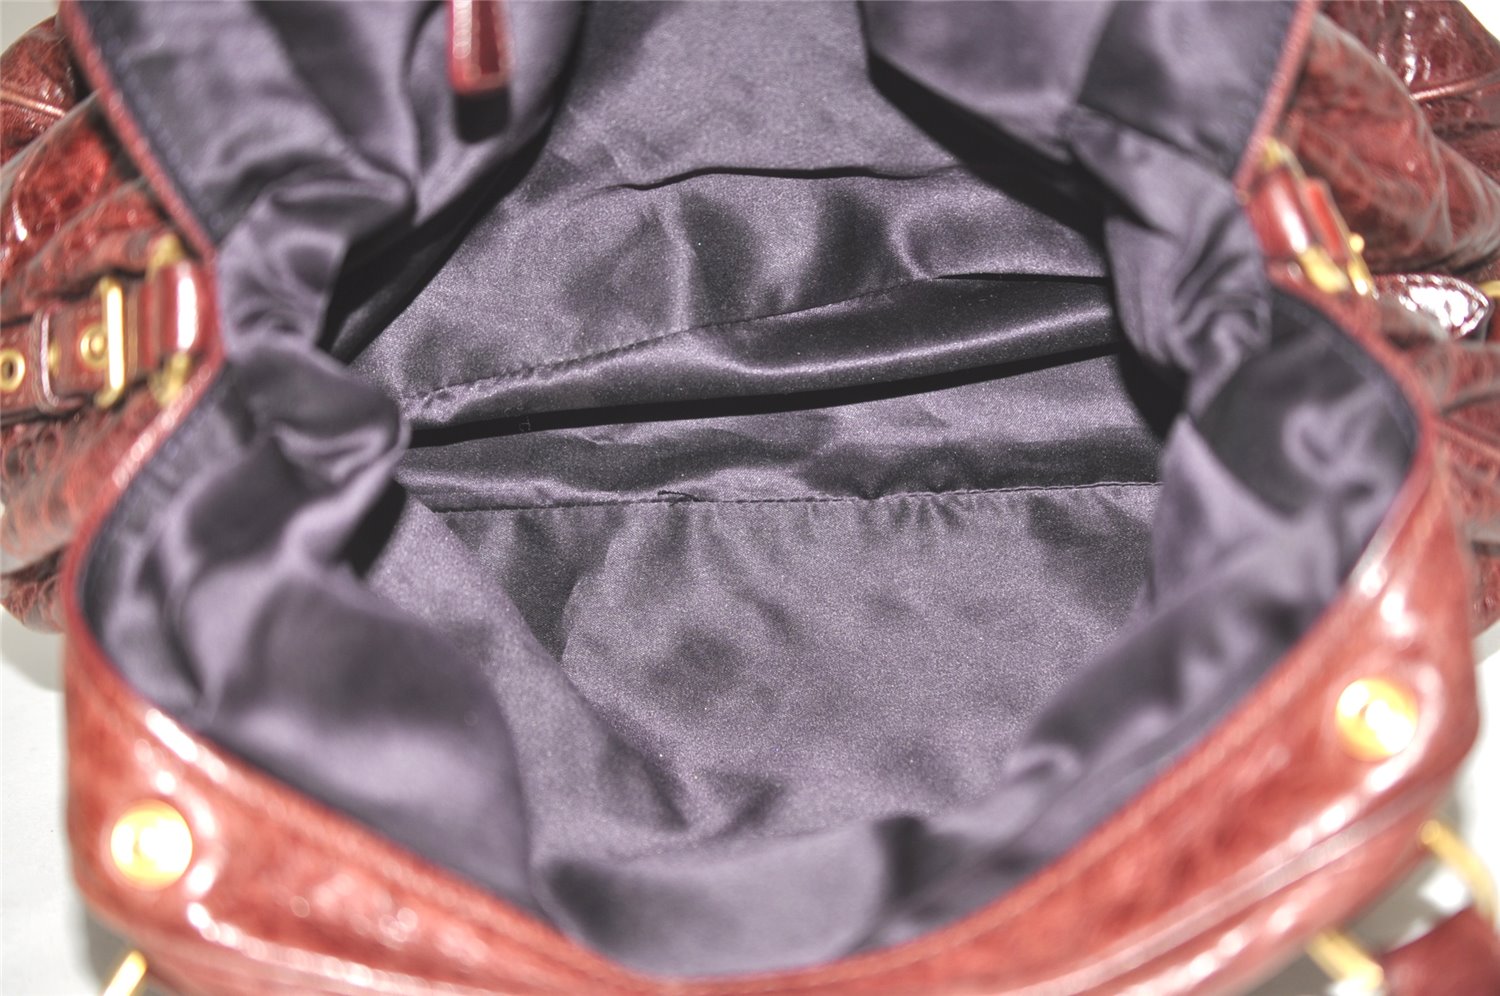 Authentic MIU MIU Vintage Leather 2Way Shoulder Tote Bag Wine Red 9151J